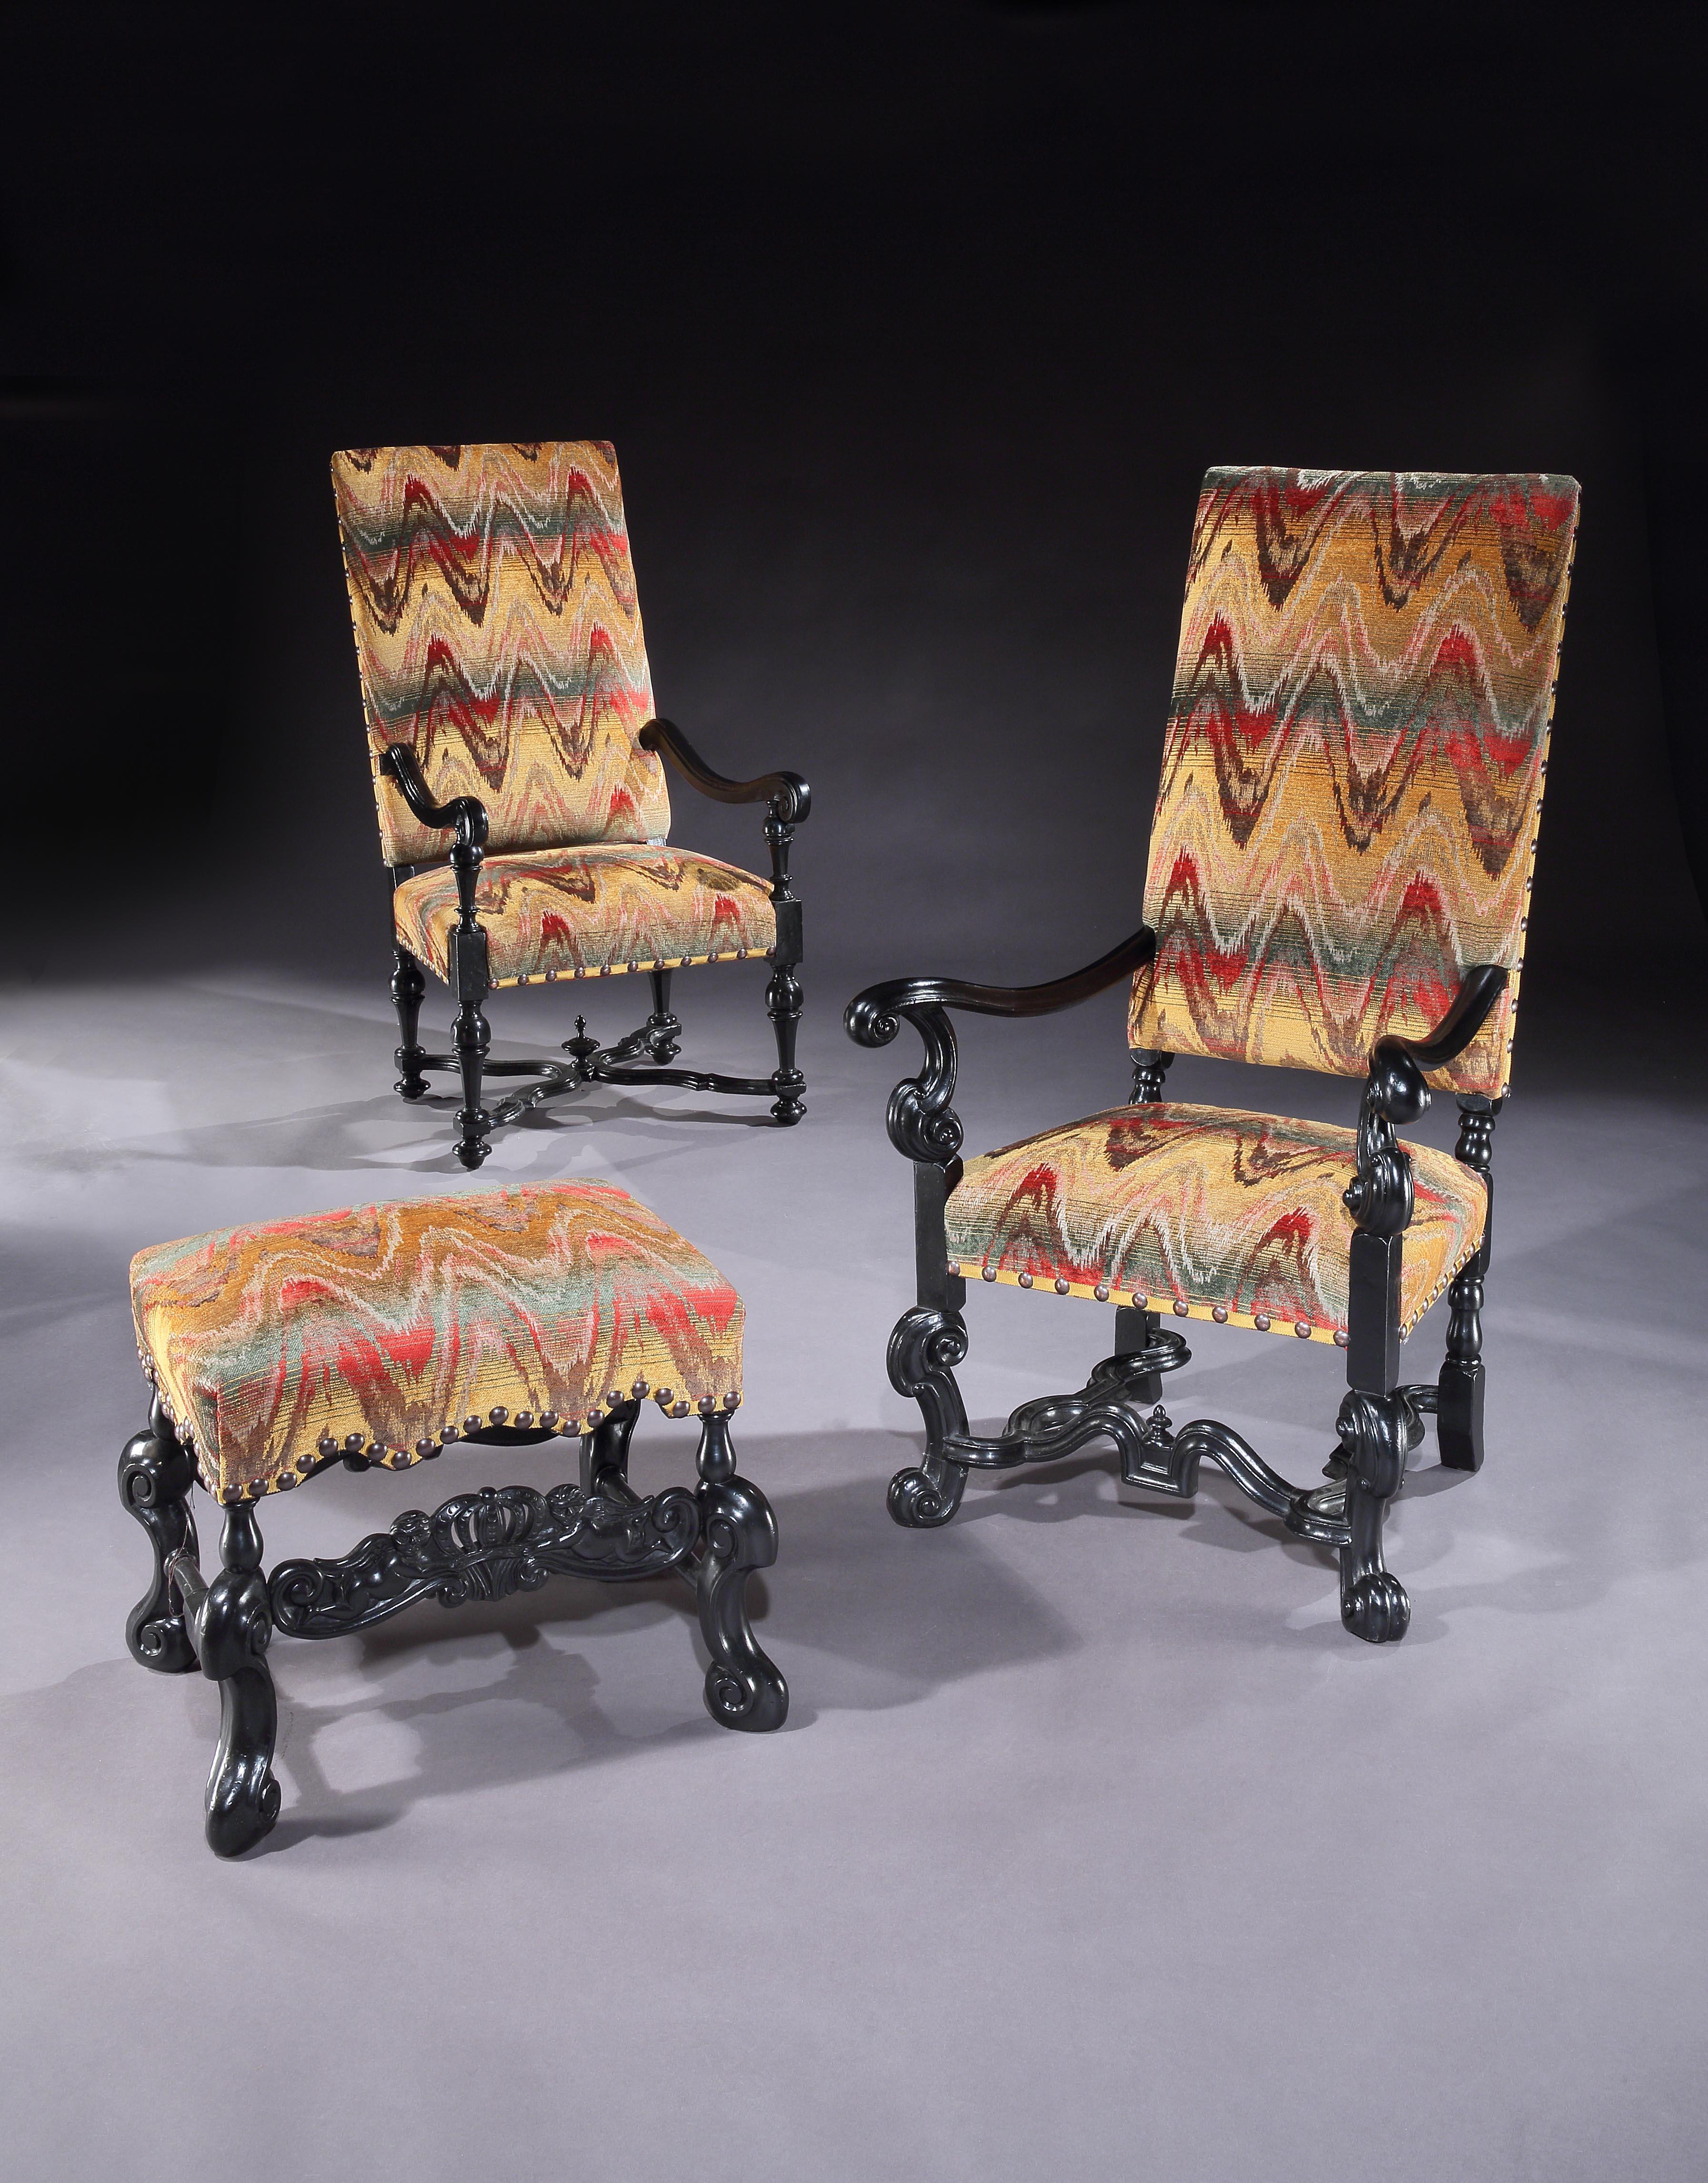 Ein seltenes, zusammengehöriges Paar ebonisierter Sessel aus dem Barock und der Barockrevolution sowie ein antiquarischer Barockhocker 

- Aus einer privaten Möbelsammlung, die erworben wurde, um drei verschiedene Perioden der europäischen